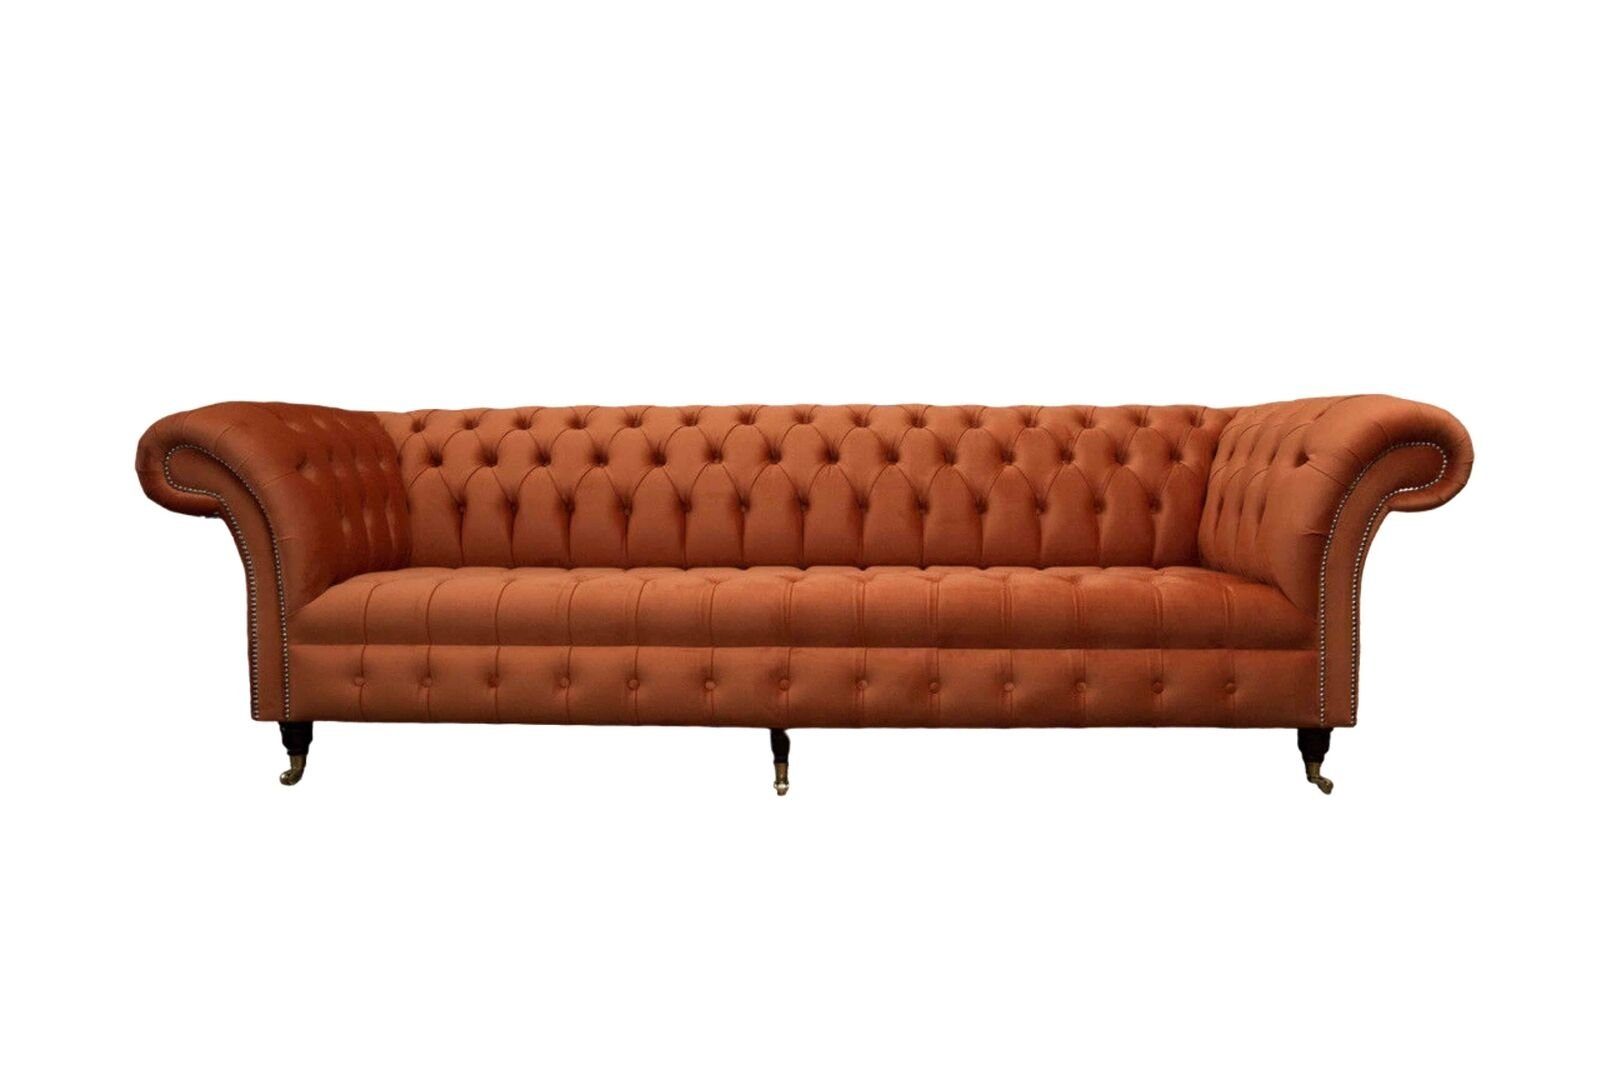 JVmoebel Sofa Britischer Chesterfield Viersitzer Luxus Sofa Design Couch Sofa, Made In Europe